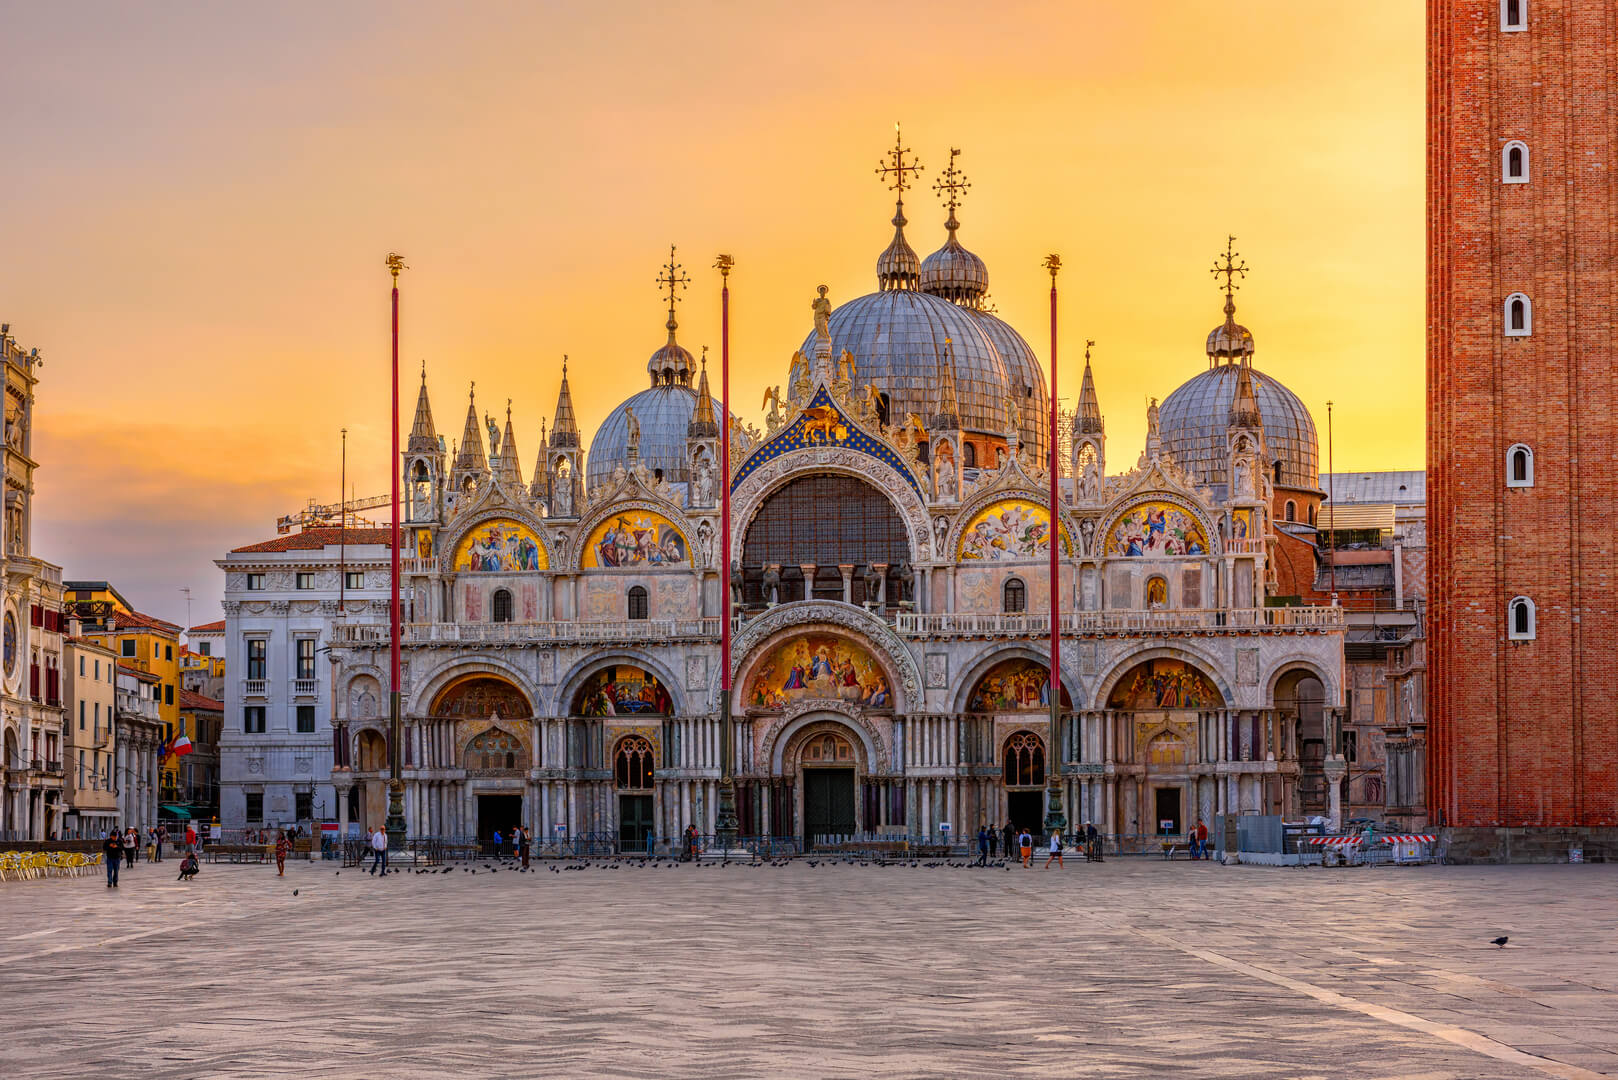 Vista della Basilica di San Marco e su piazza San Marco a Venezia, Italia. Architettura e punto di riferimento di Venezia. Paesaggio urbano di Venezia all'alba.